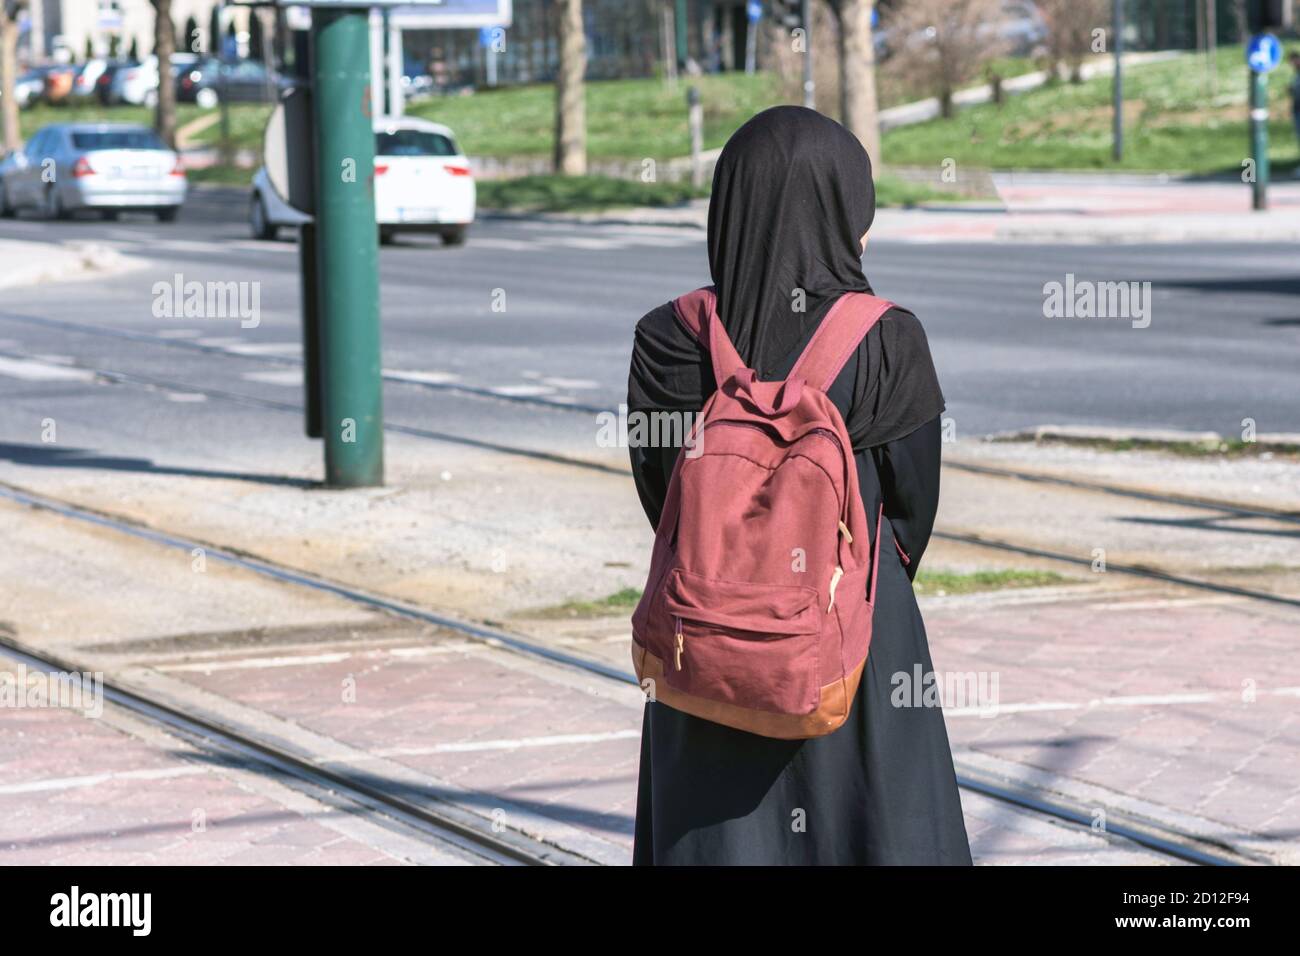 Femme musulmane attendant un tramway à l'arrêt de tram Banque D'Images